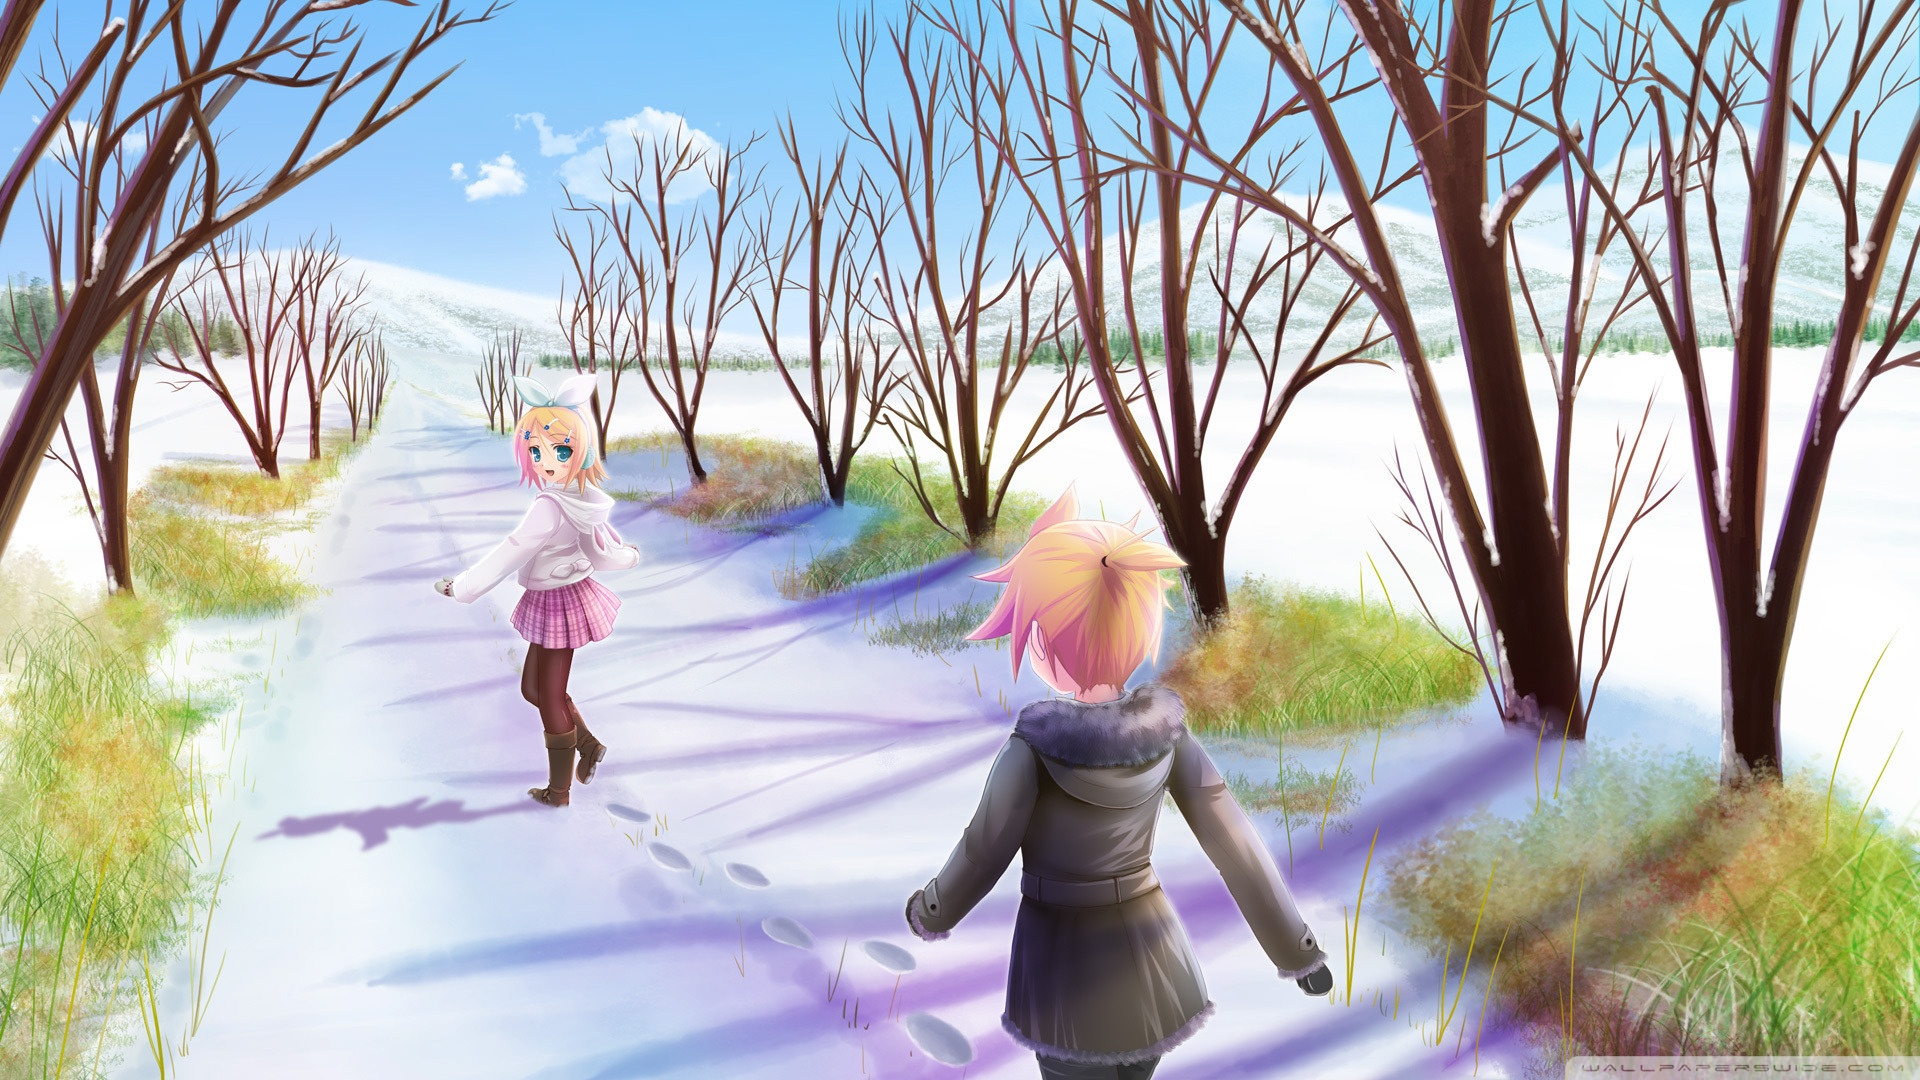 Anime Winter Scene Ultra HD Desktop Background Wallpaper for 4K UHD TV, Tablet